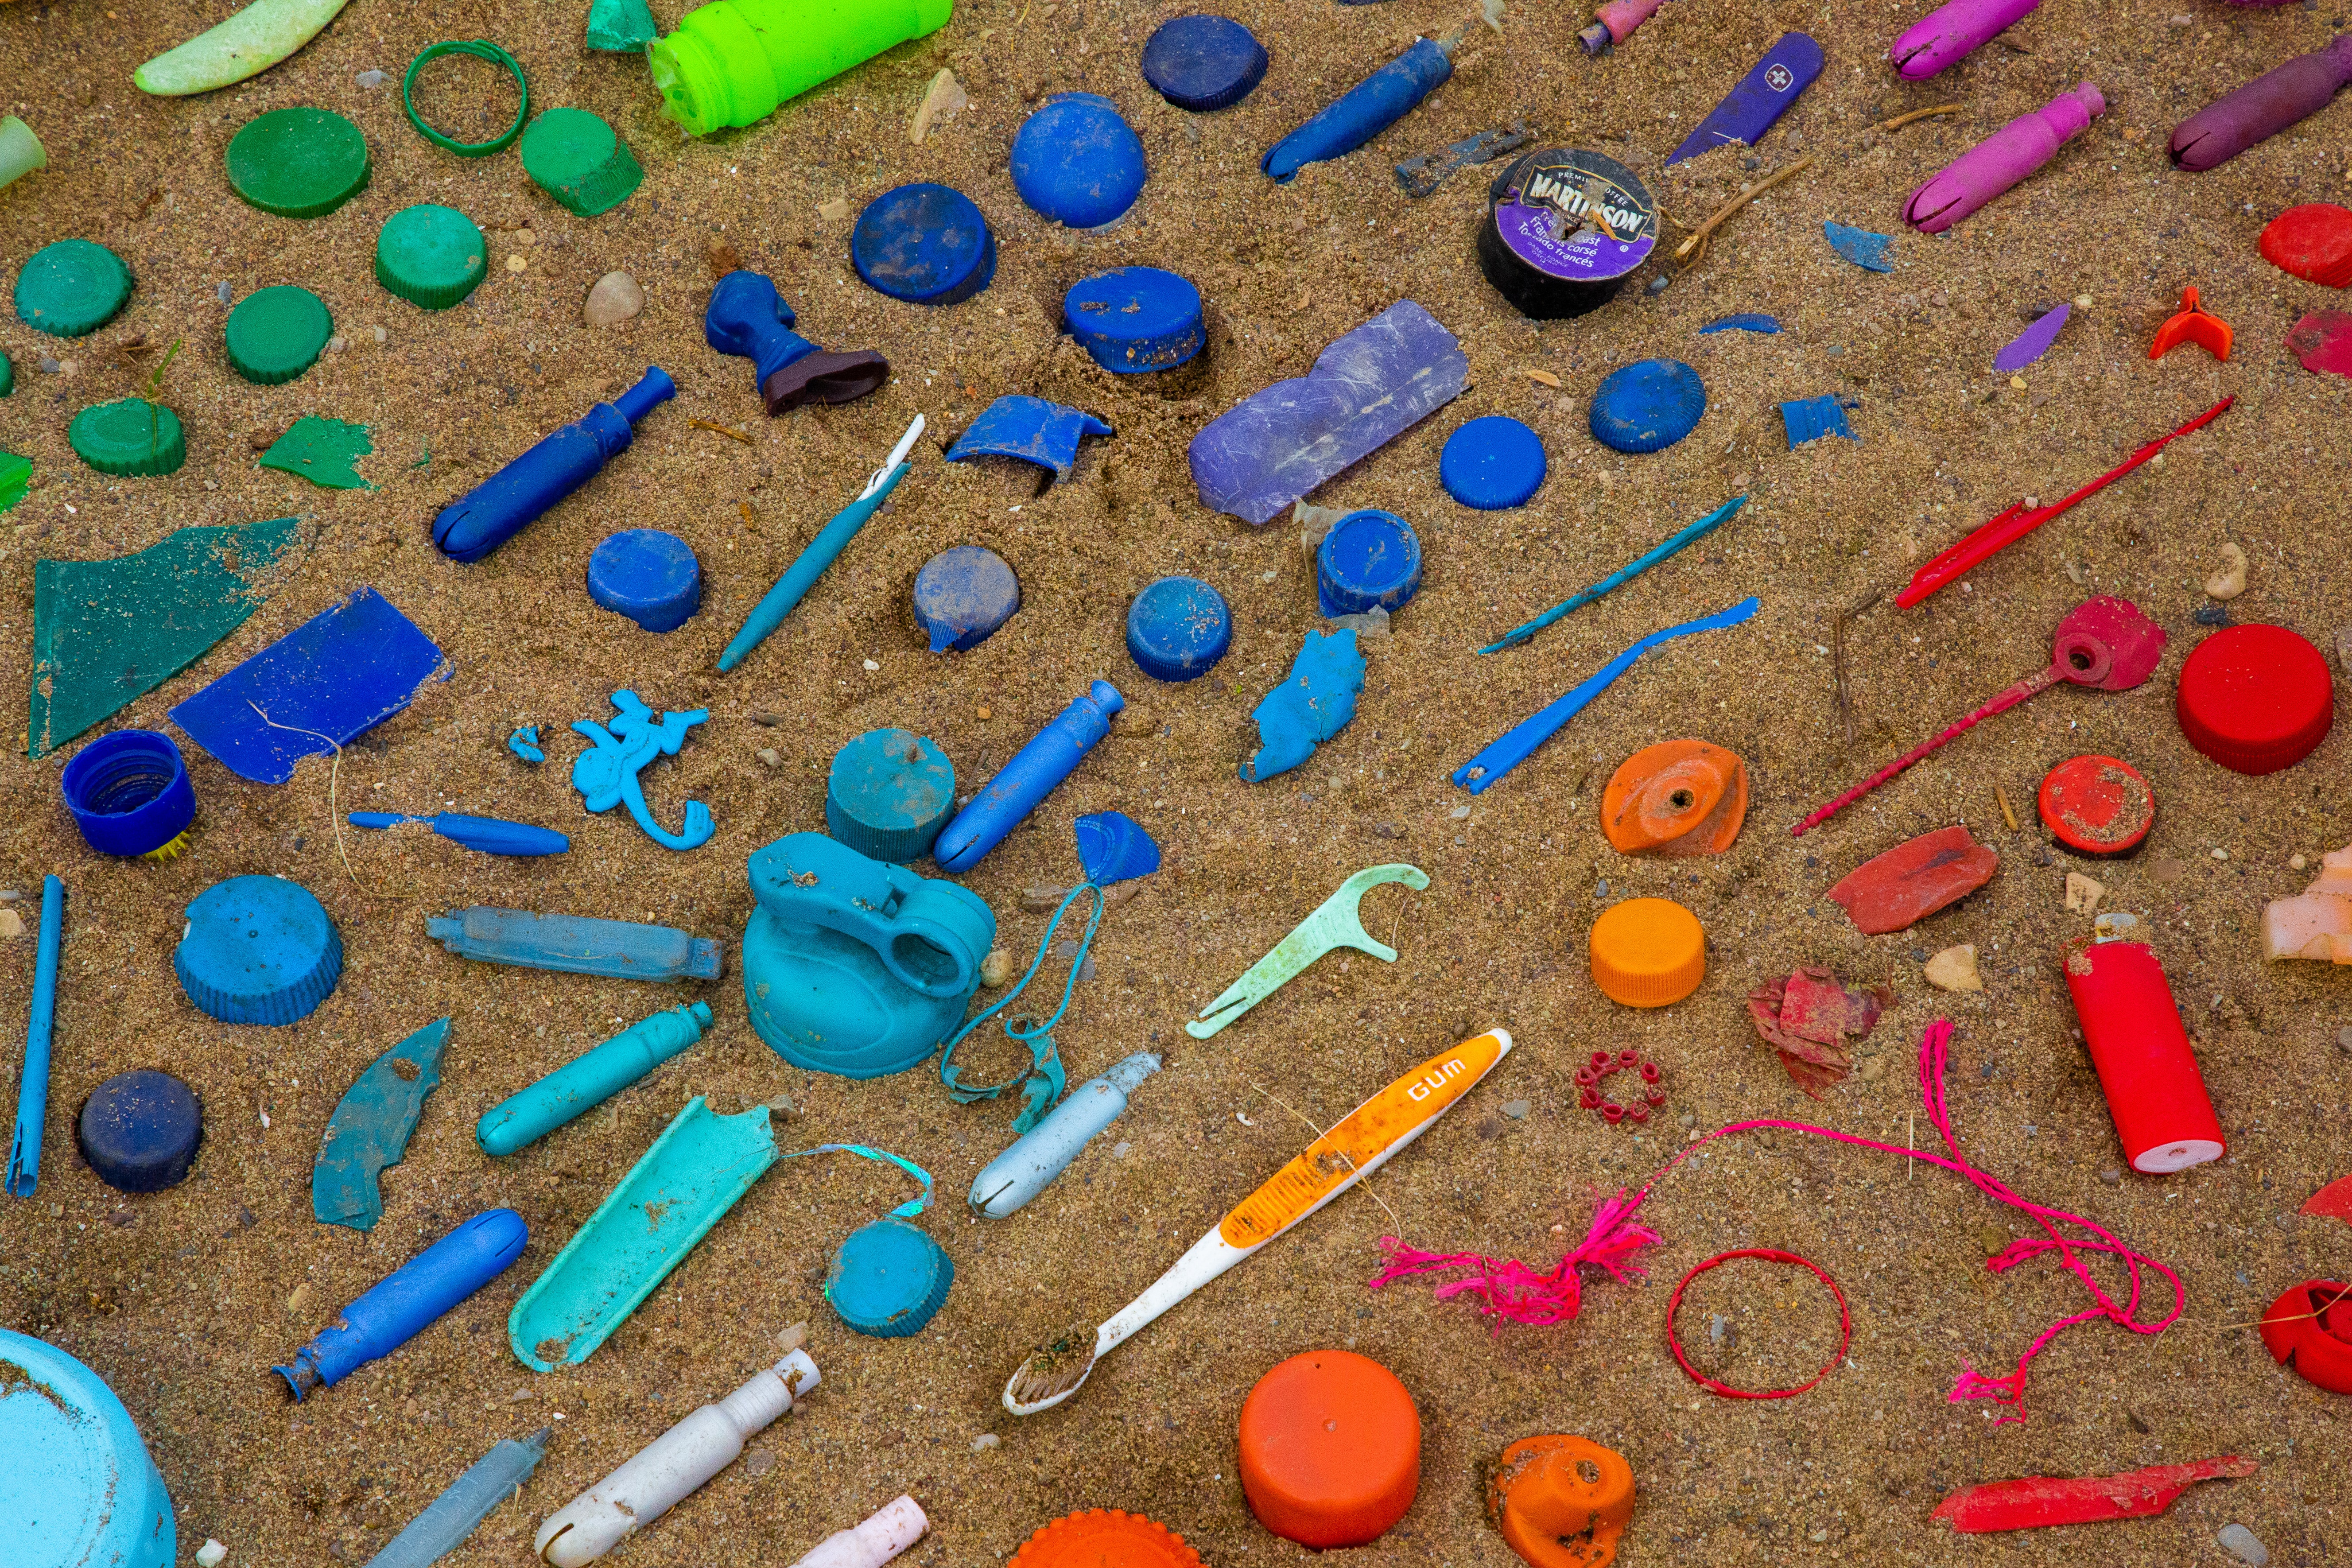 Plusieurs objets jetables en plastique sont désormais interdits